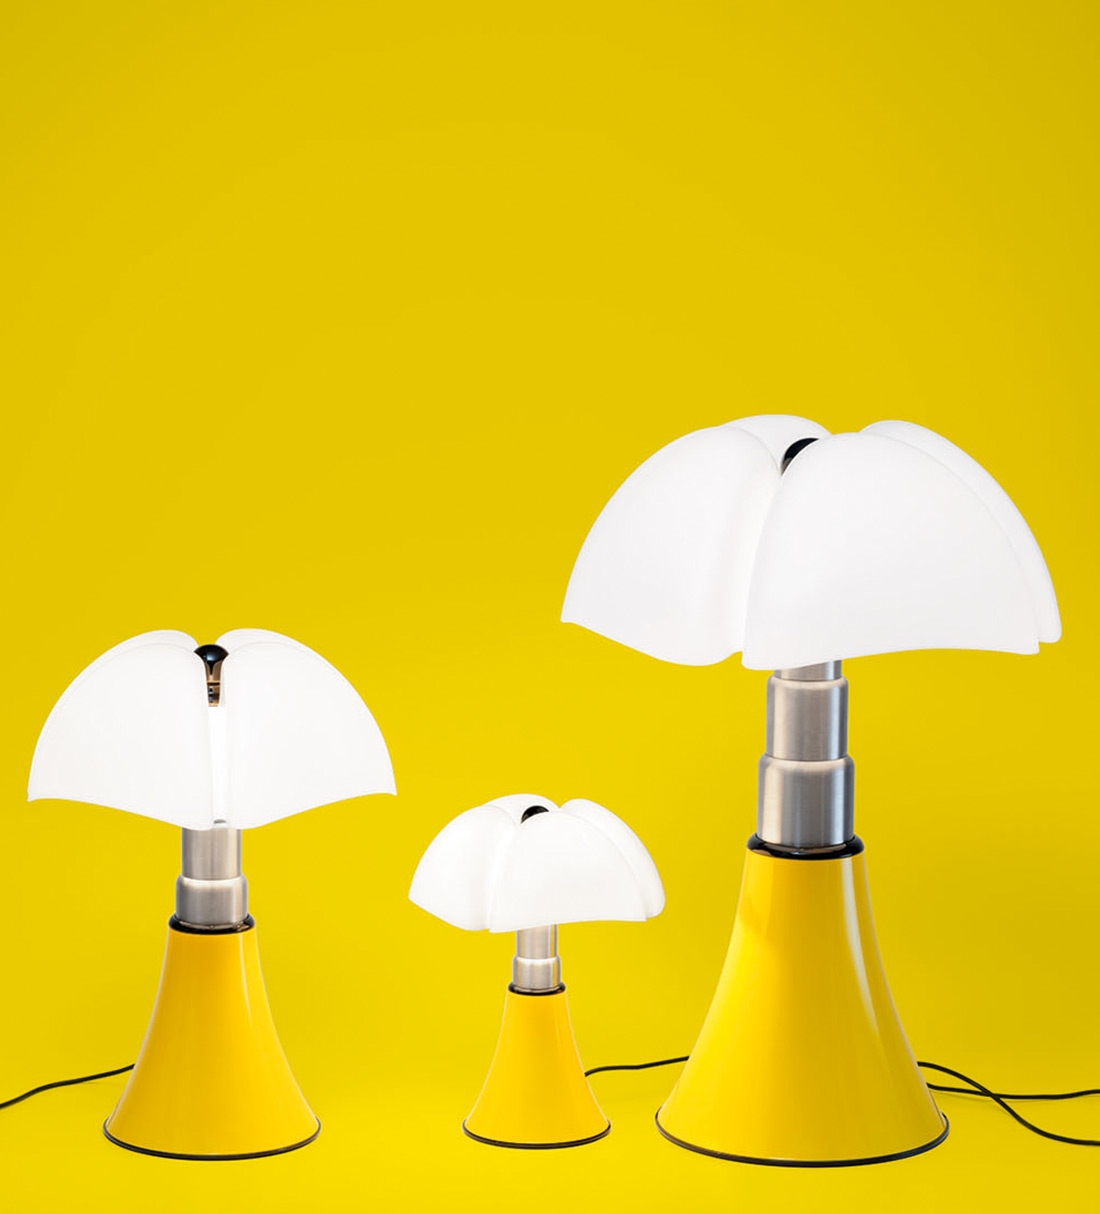 Drie nieuwe gele Pipistrello lampen. Met de naam Pop